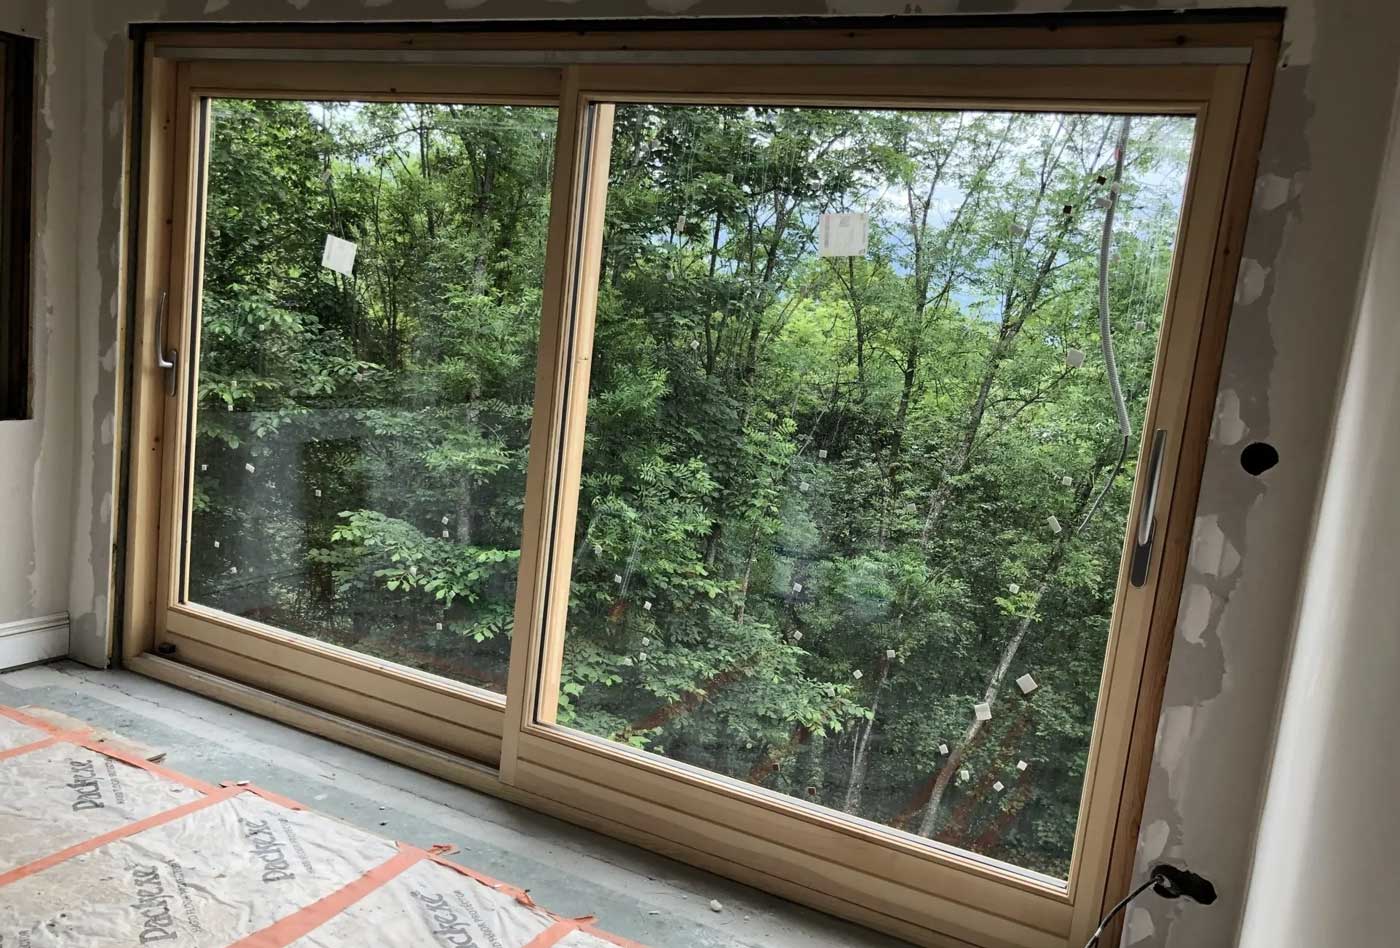 Baie vitrée en double vitrage, structure en bois, vue sur un jardin arboré